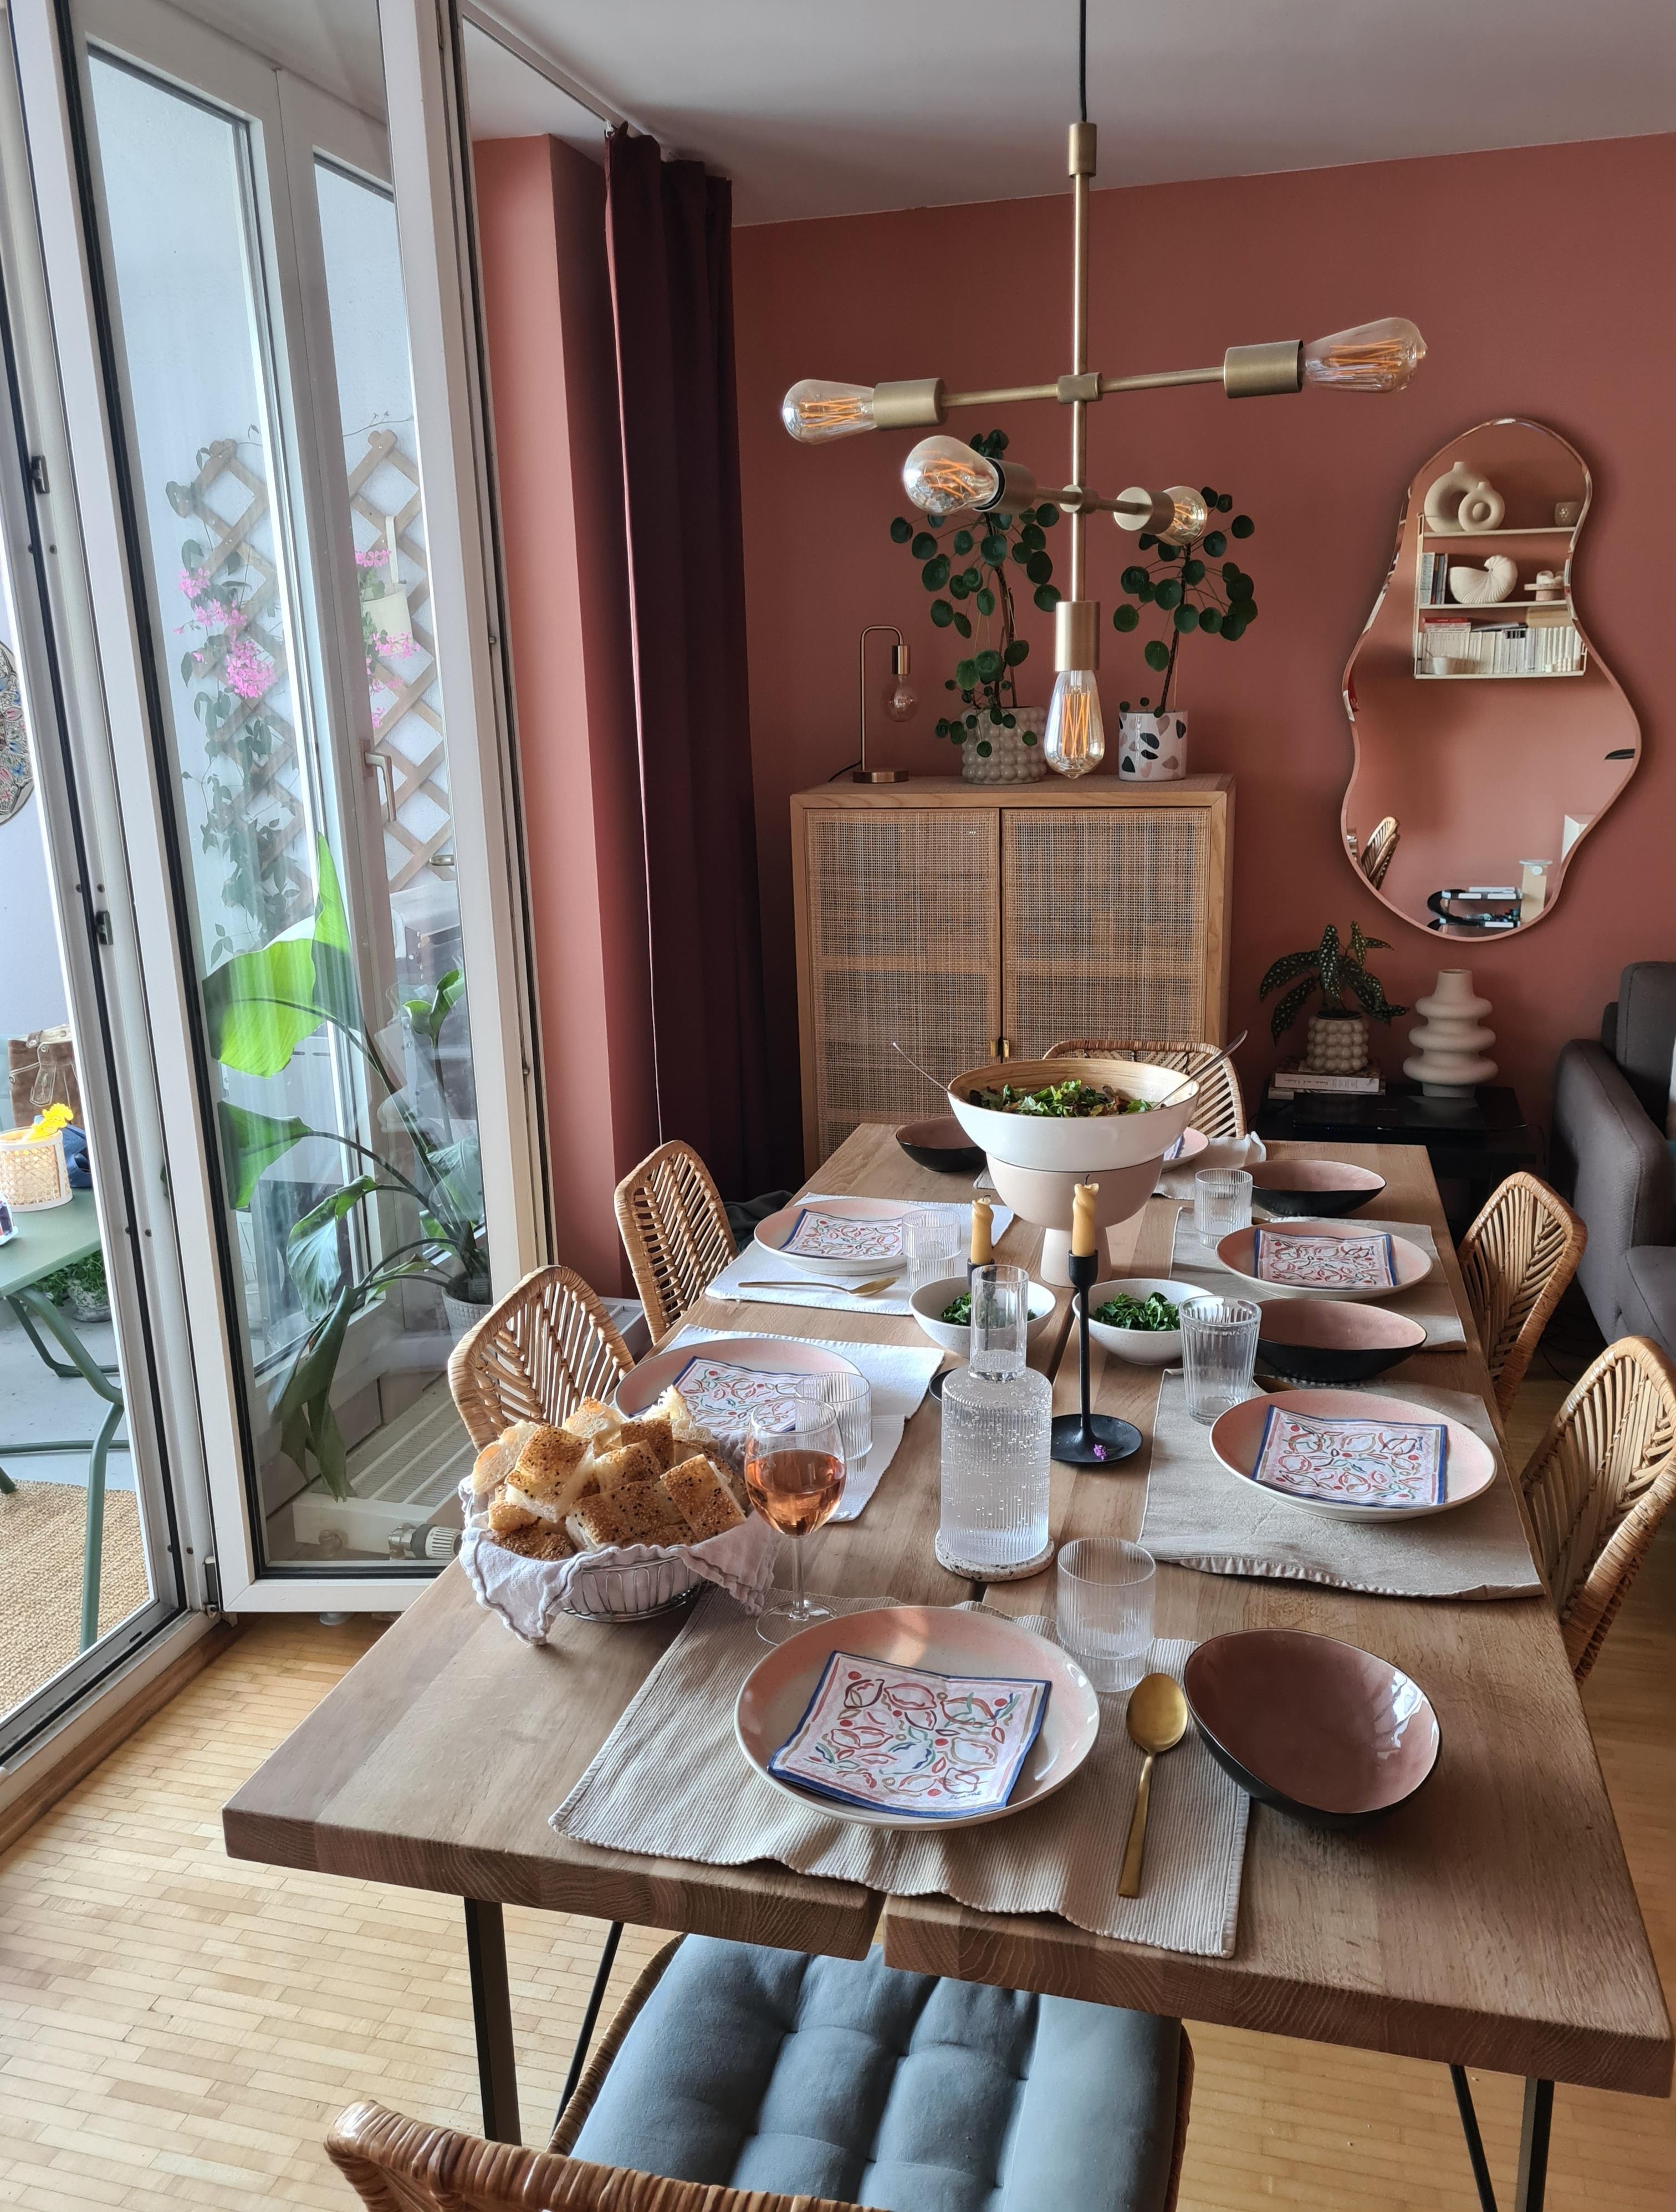 Dinner mit Freunden bei offenem Fenster in unserem Ess- und #wohnzimmer | #livingchallenge